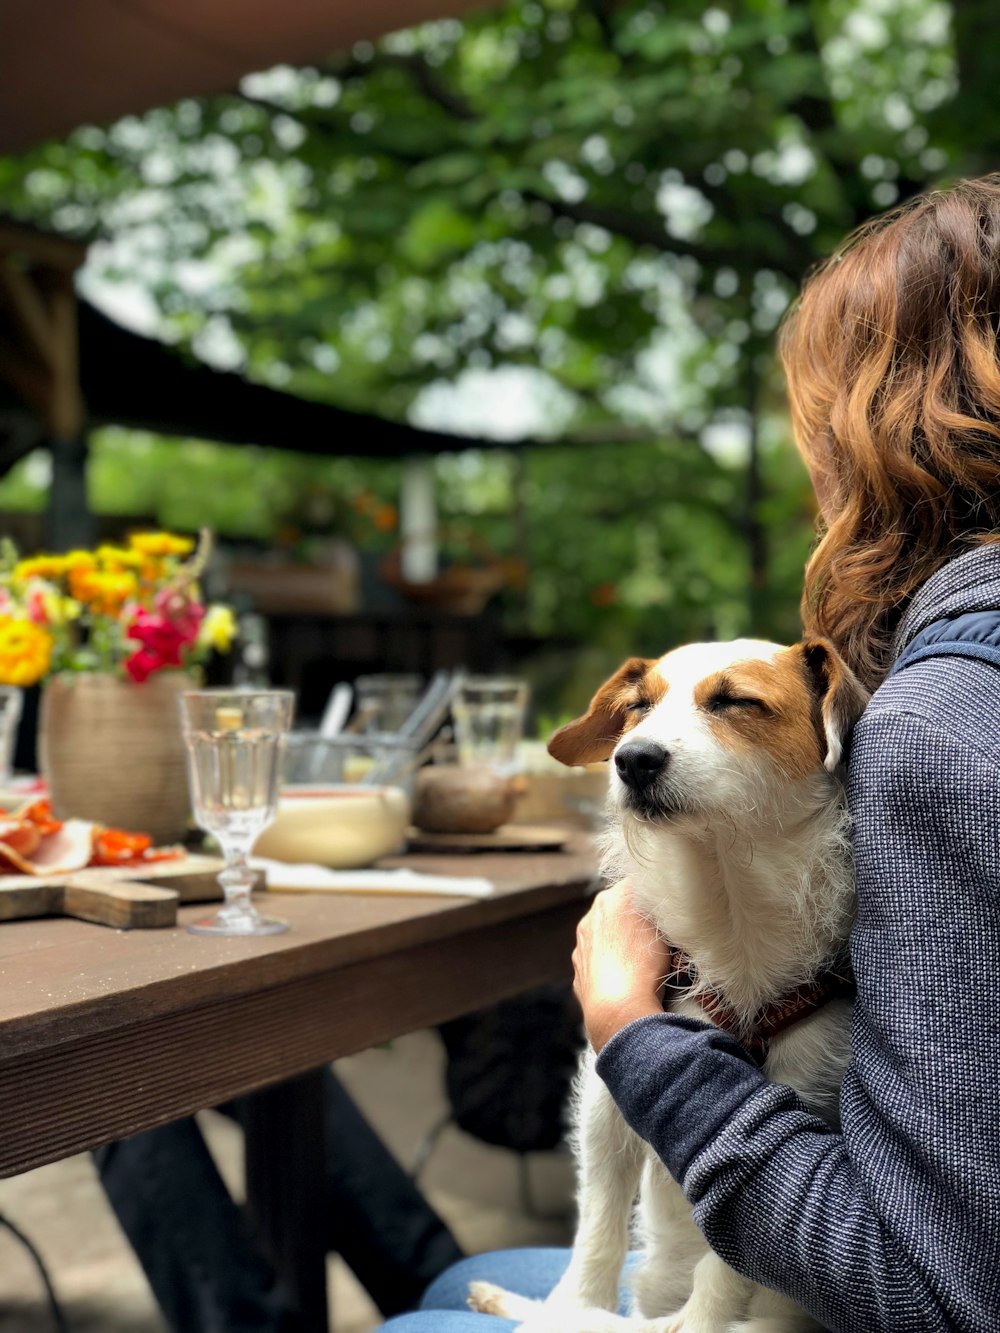 cane in grembo alla donna davanti al tavolo da pranzo